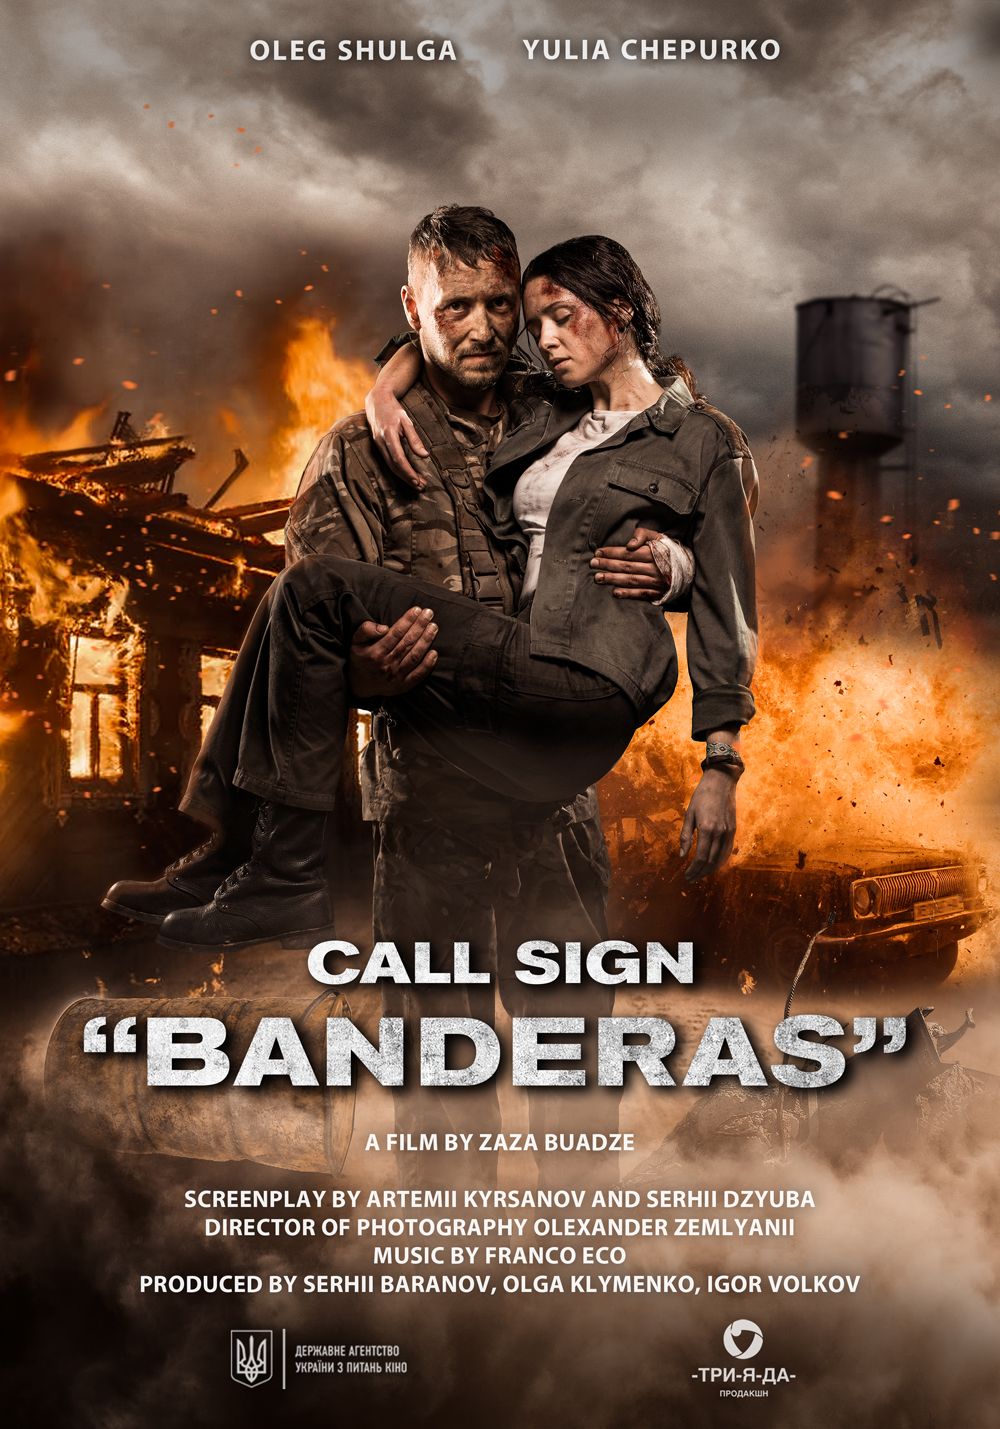 Call Sign Banderas (2018) Hindi Dubbed Movie